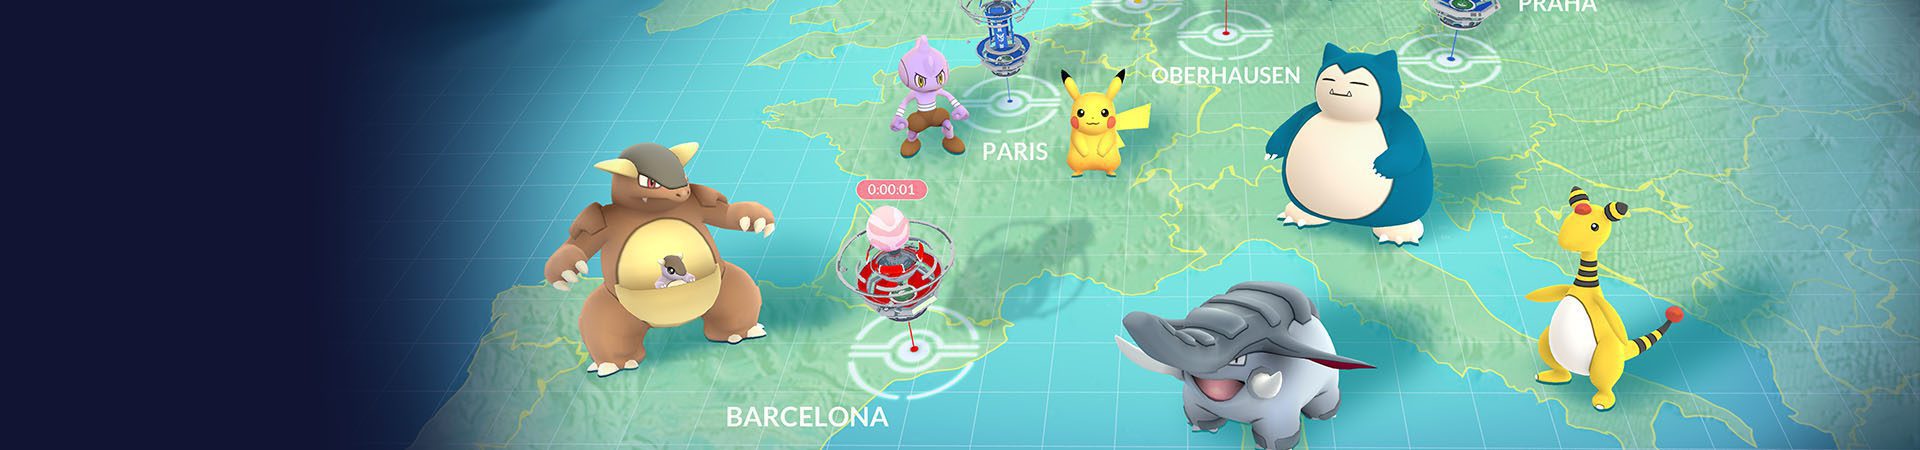 Pokémon GO : calendrier chargé d’évents pour janvier bannière